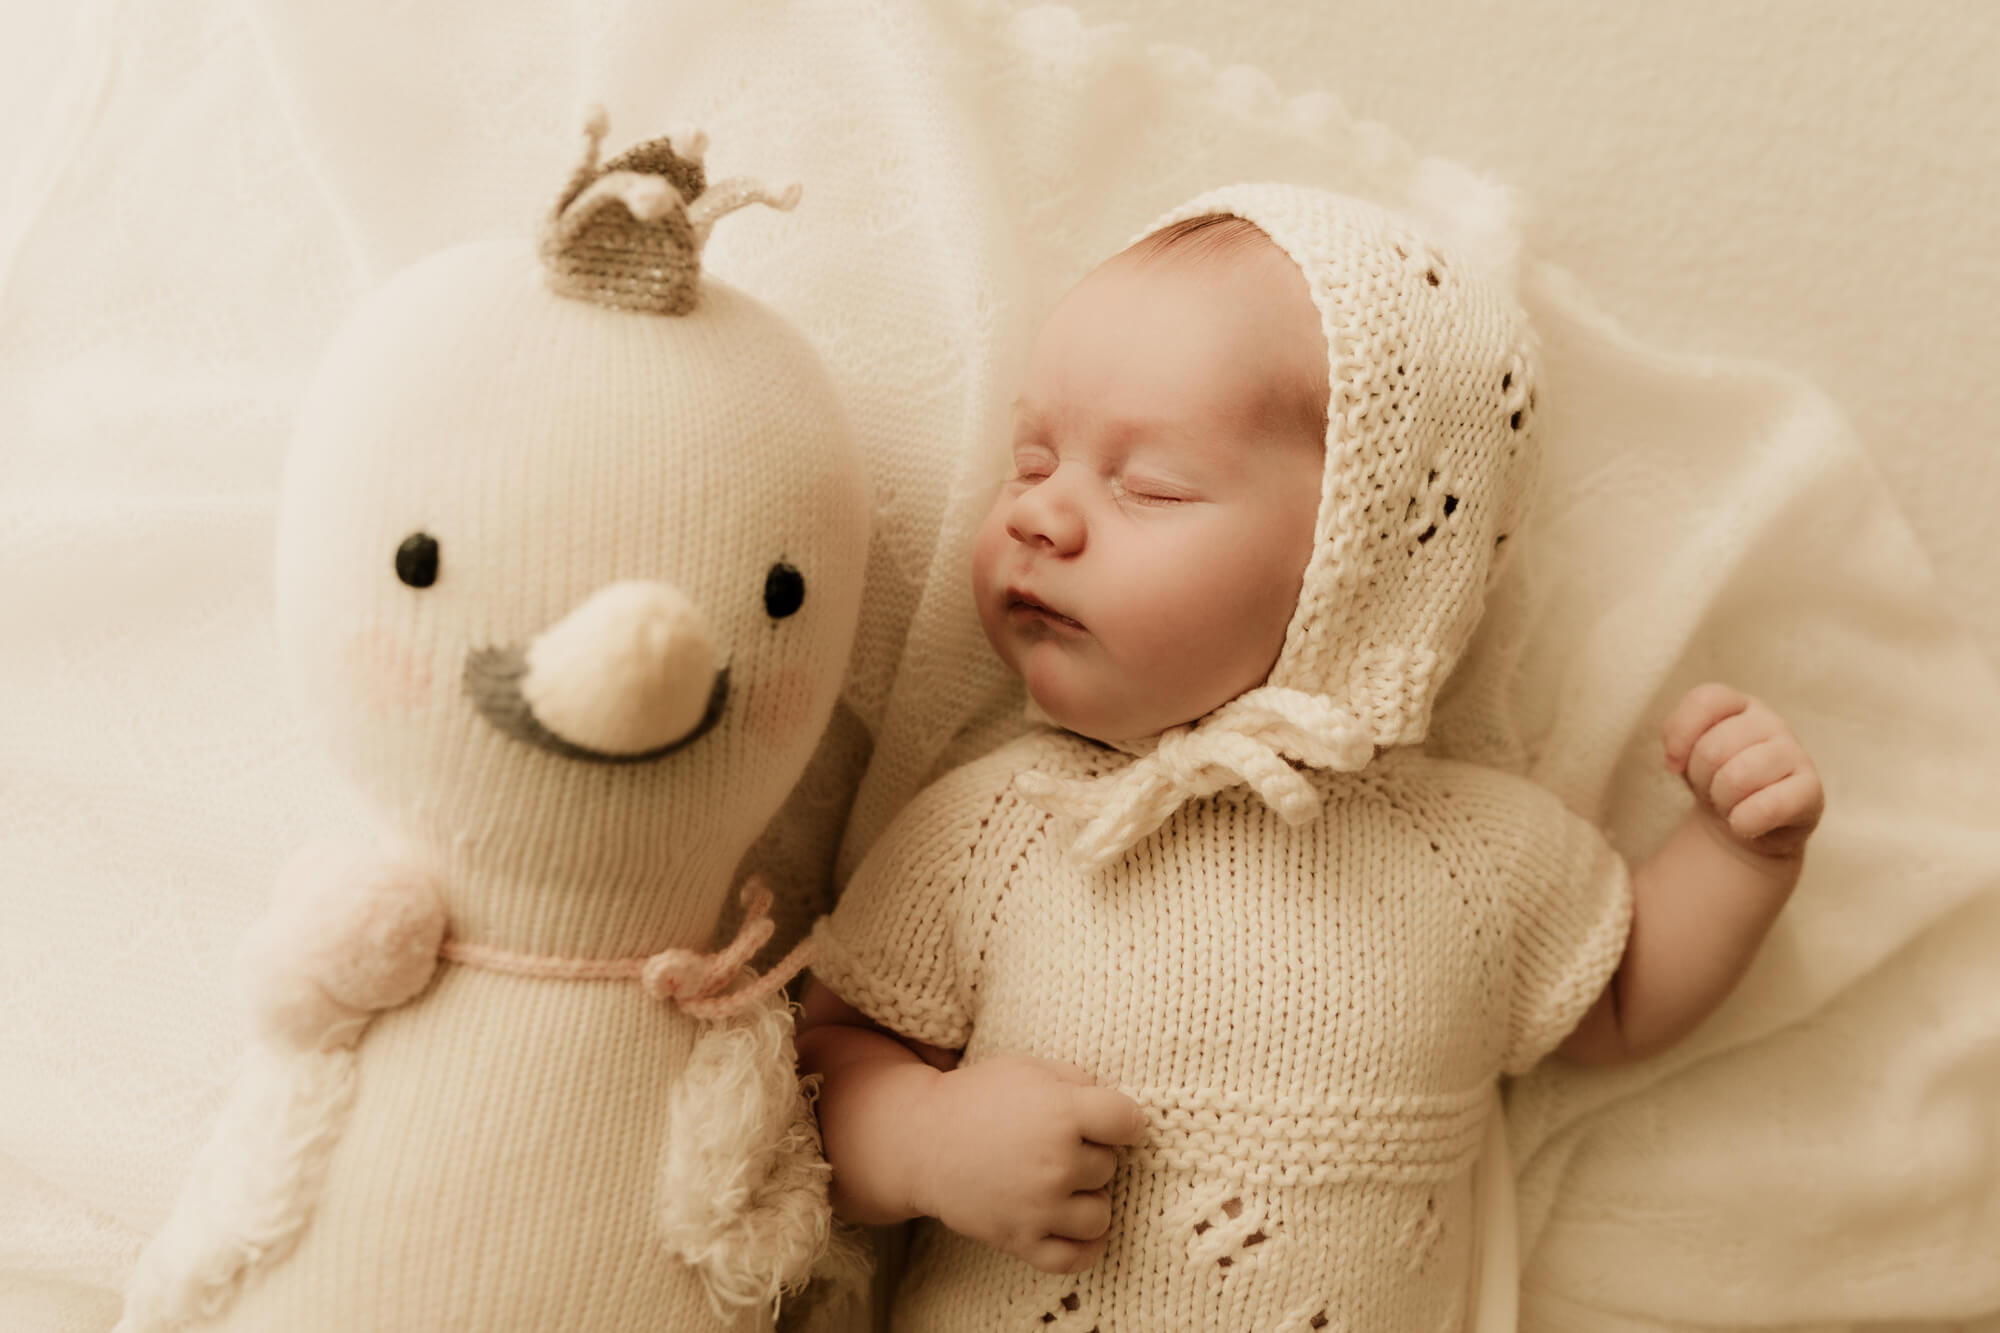 Baby girl sleeping next to her stuffed animal.